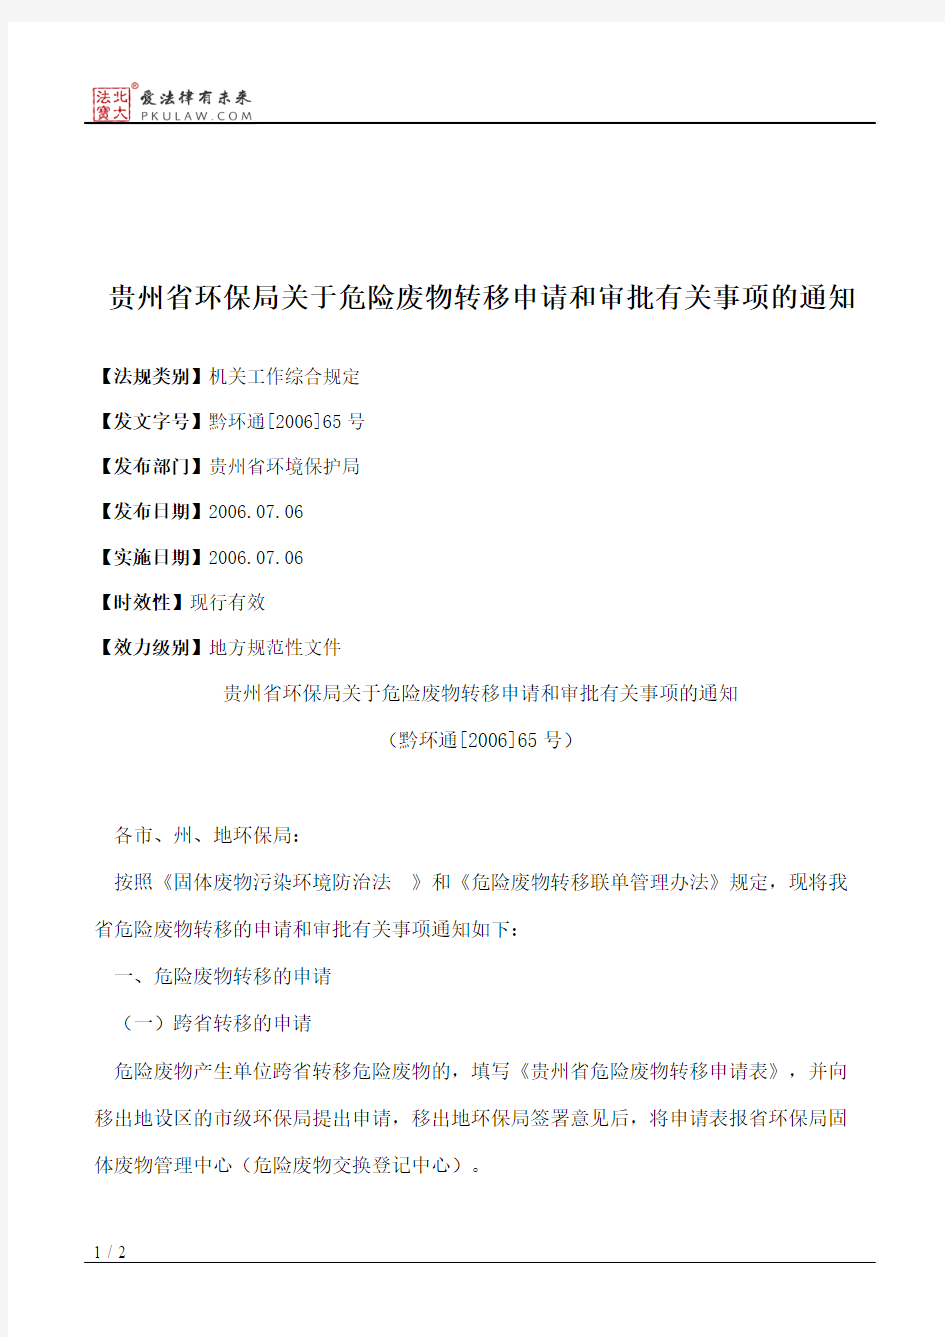 贵州省环保局关于危险废物转移申请和审批有关事项的通知